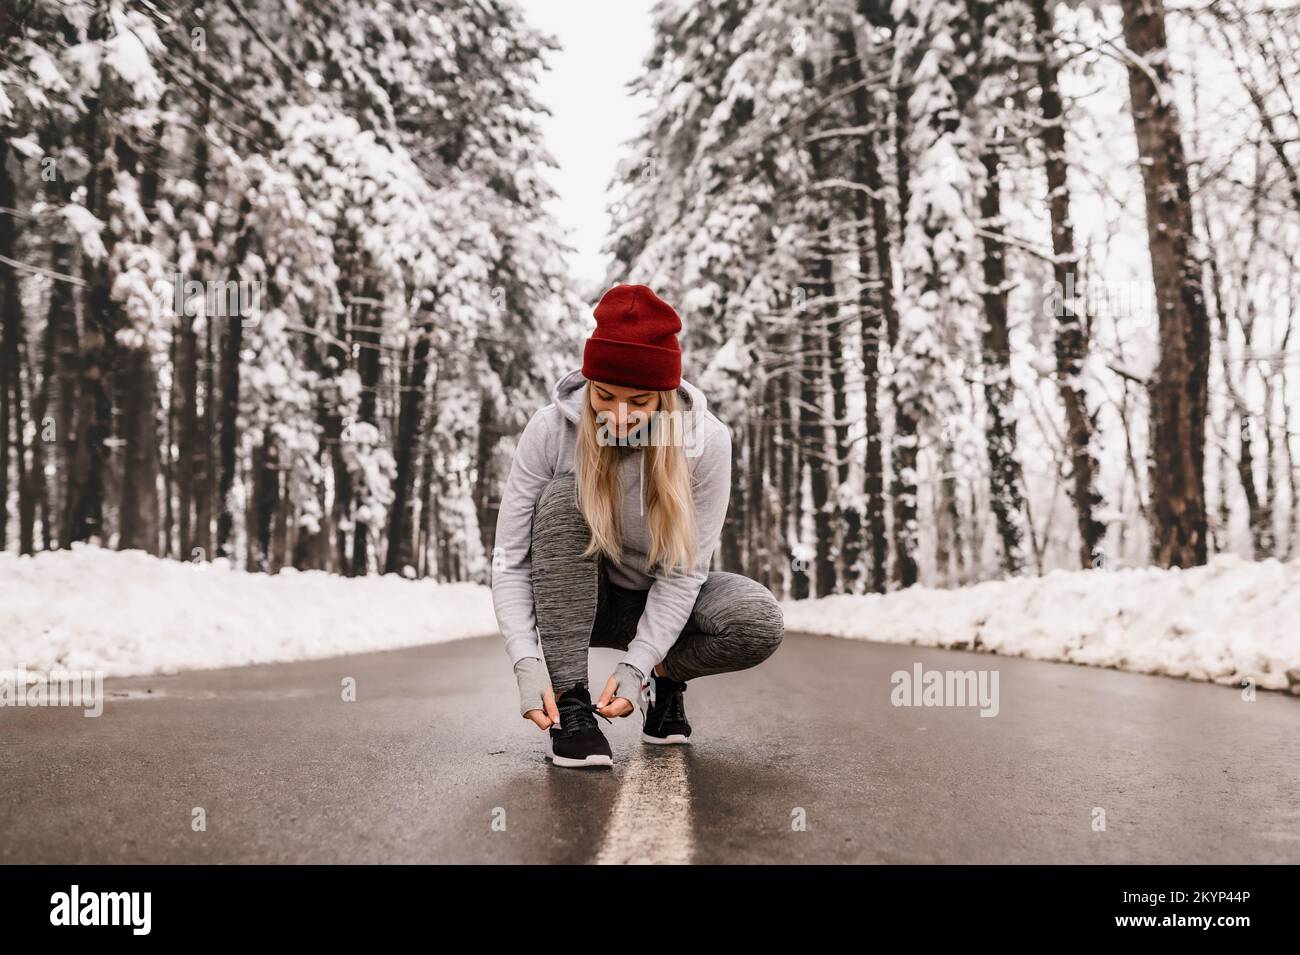 Jeune femme sportive qui s'échauffe avant son entraînement d'hiver pendant une journée ensoleillée et enneigée Banque D'Images